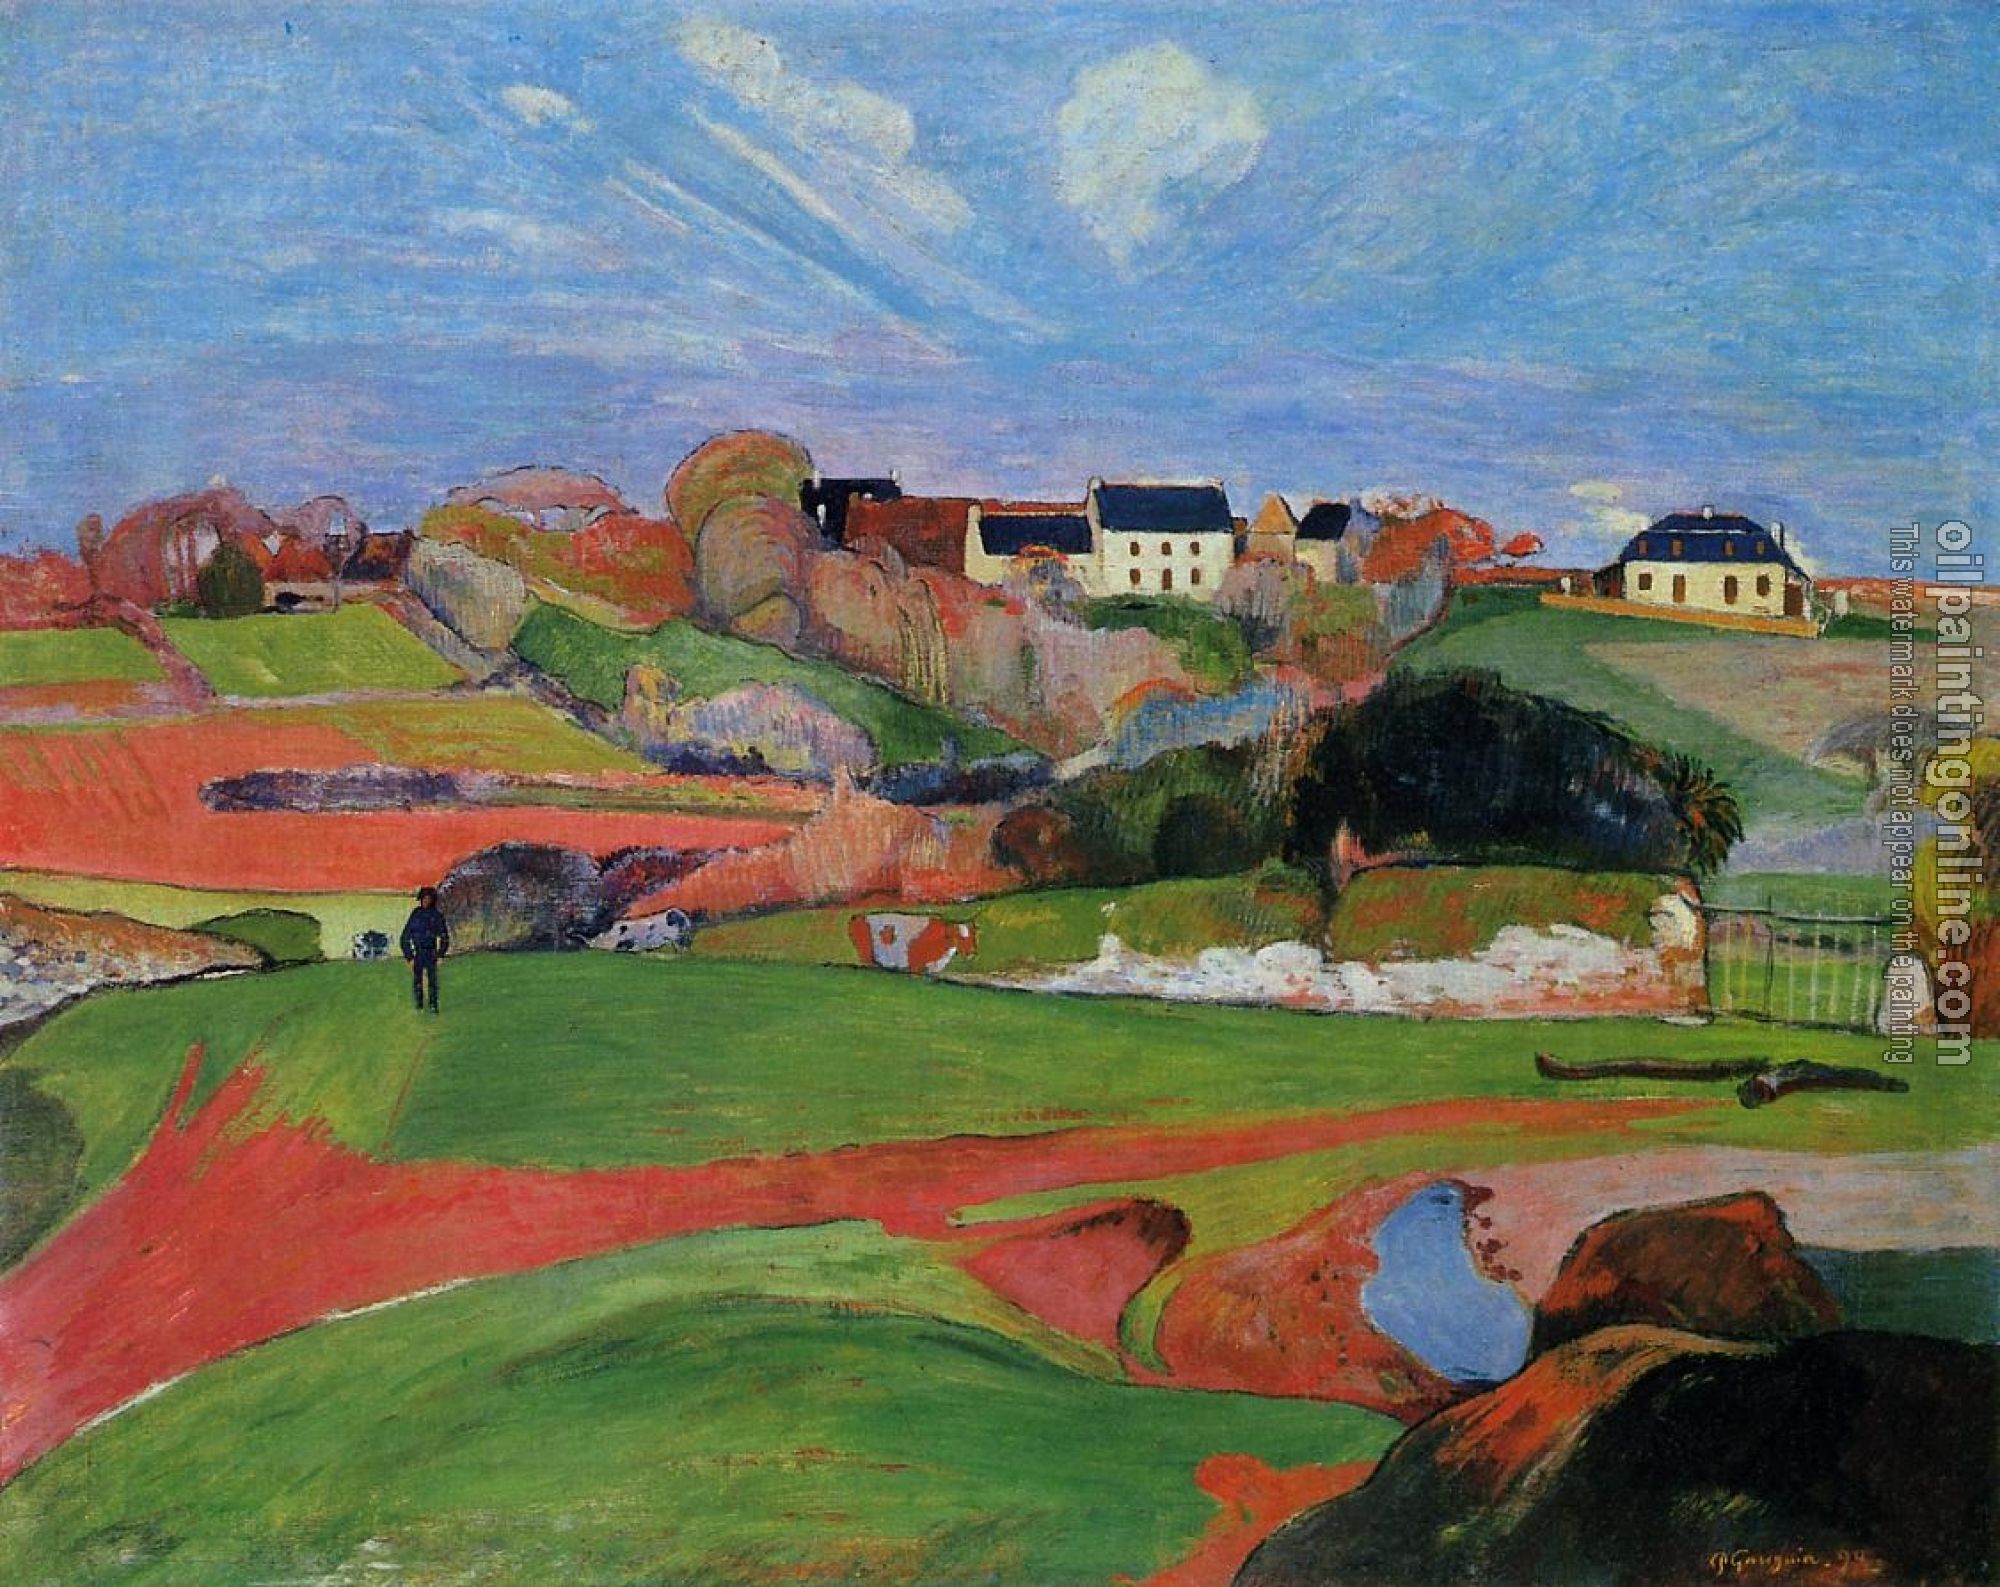 Gauguin, Paul - Fields at le Pouldu